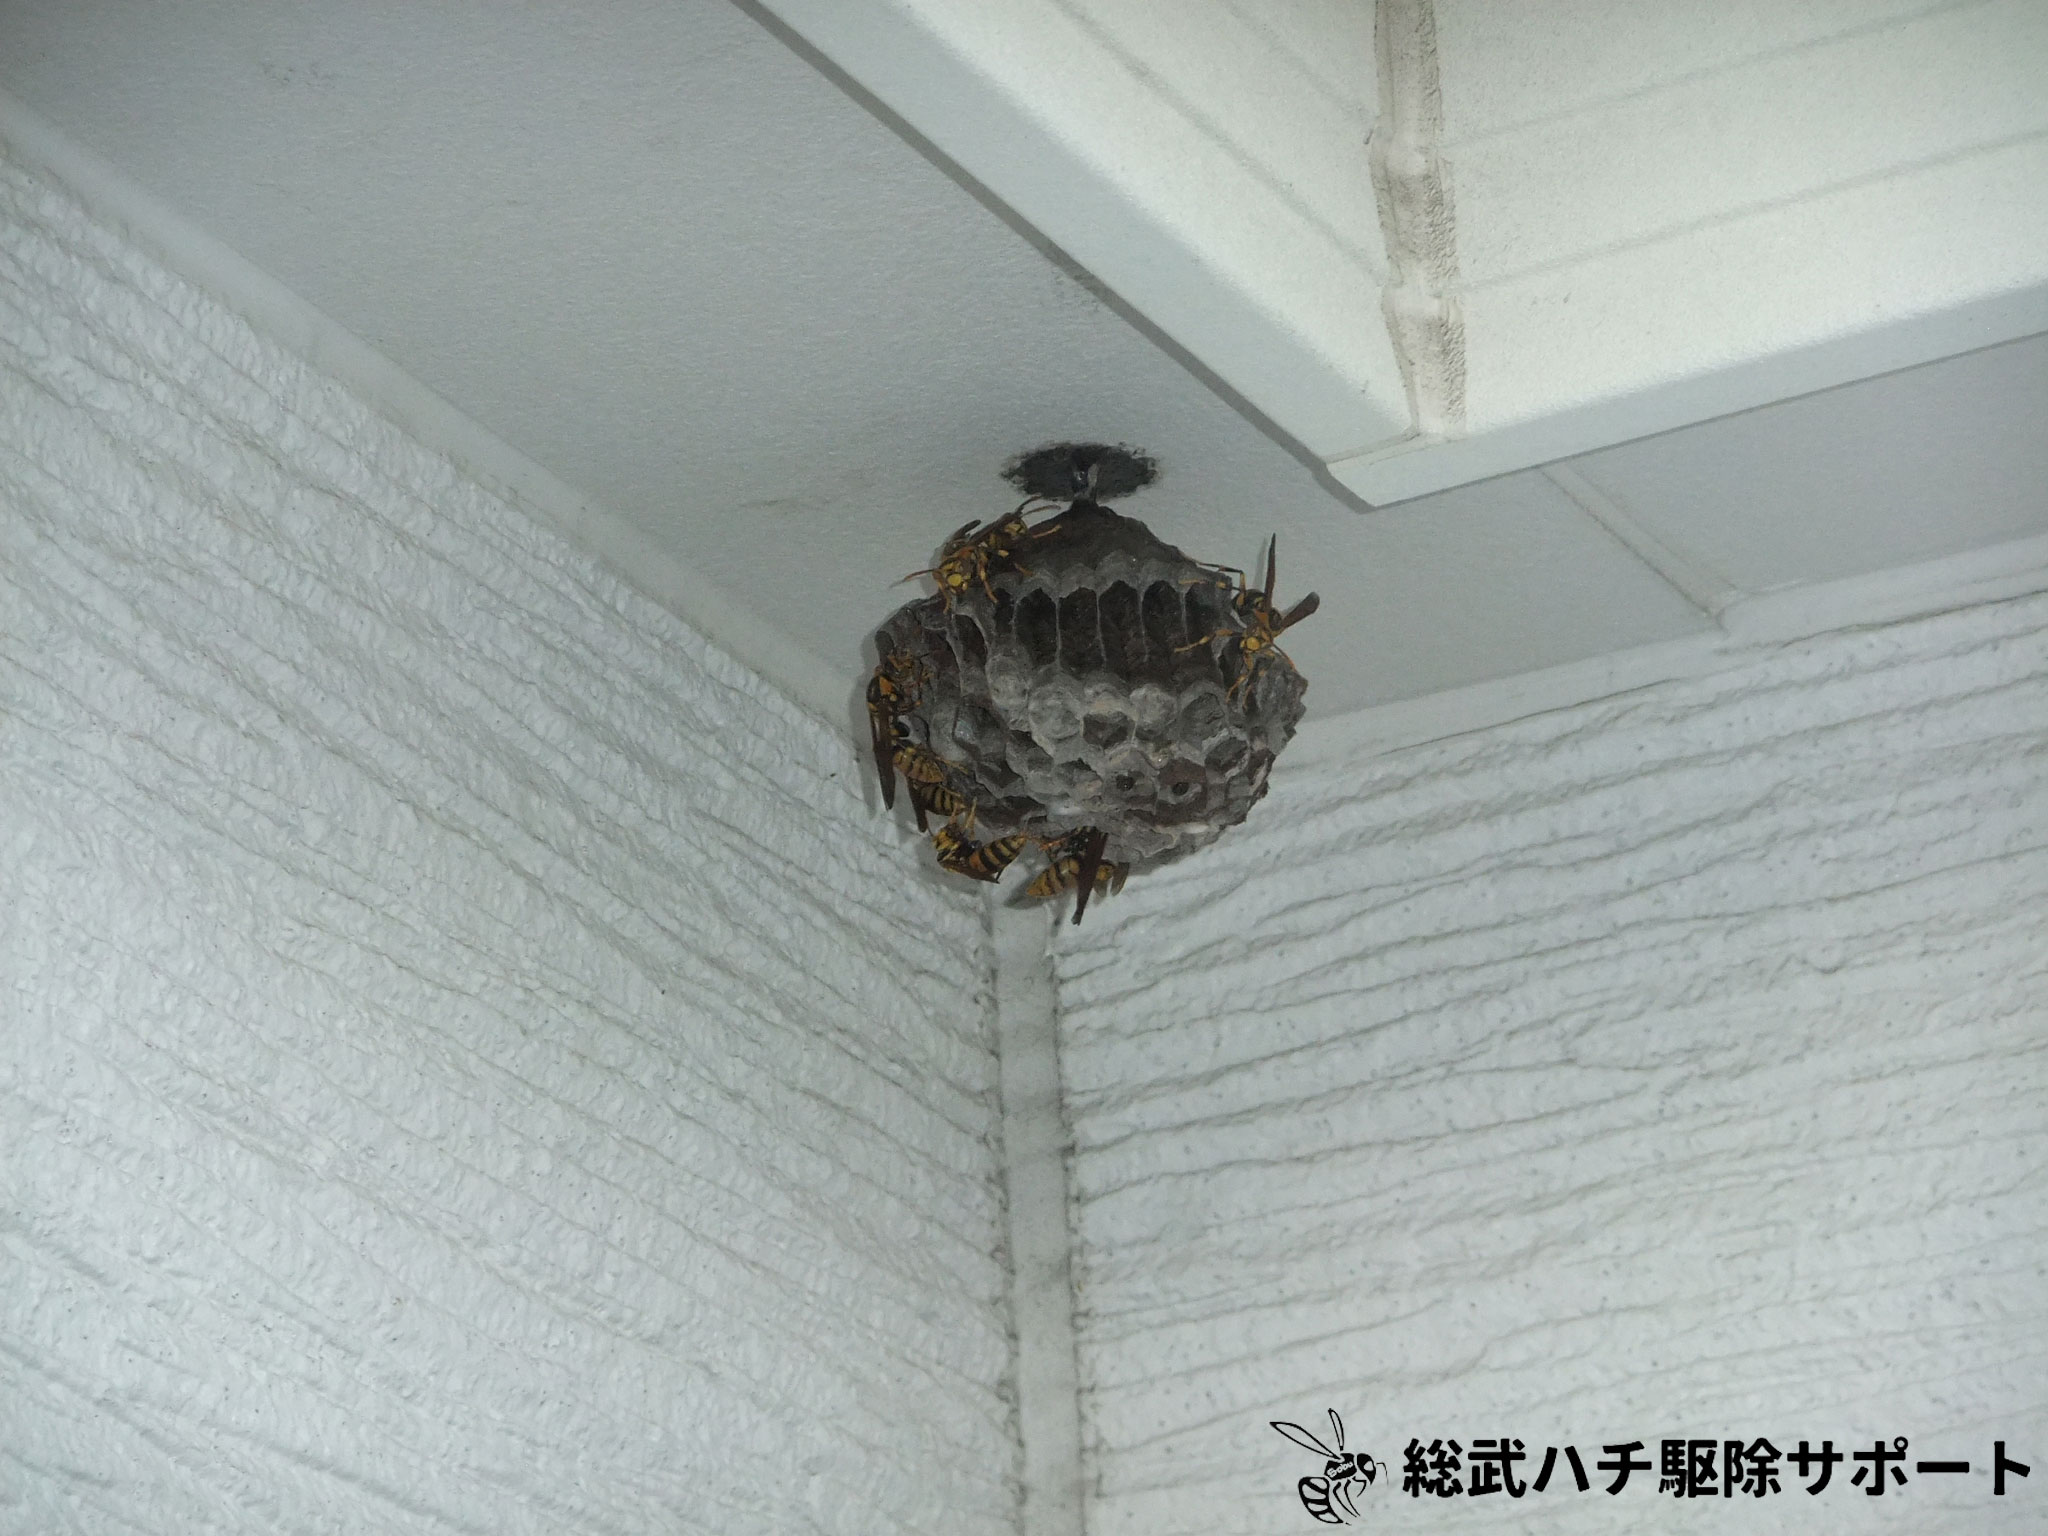 東京都品川区 マンションのベランダの軒下のアシナガバチの巣を駆除